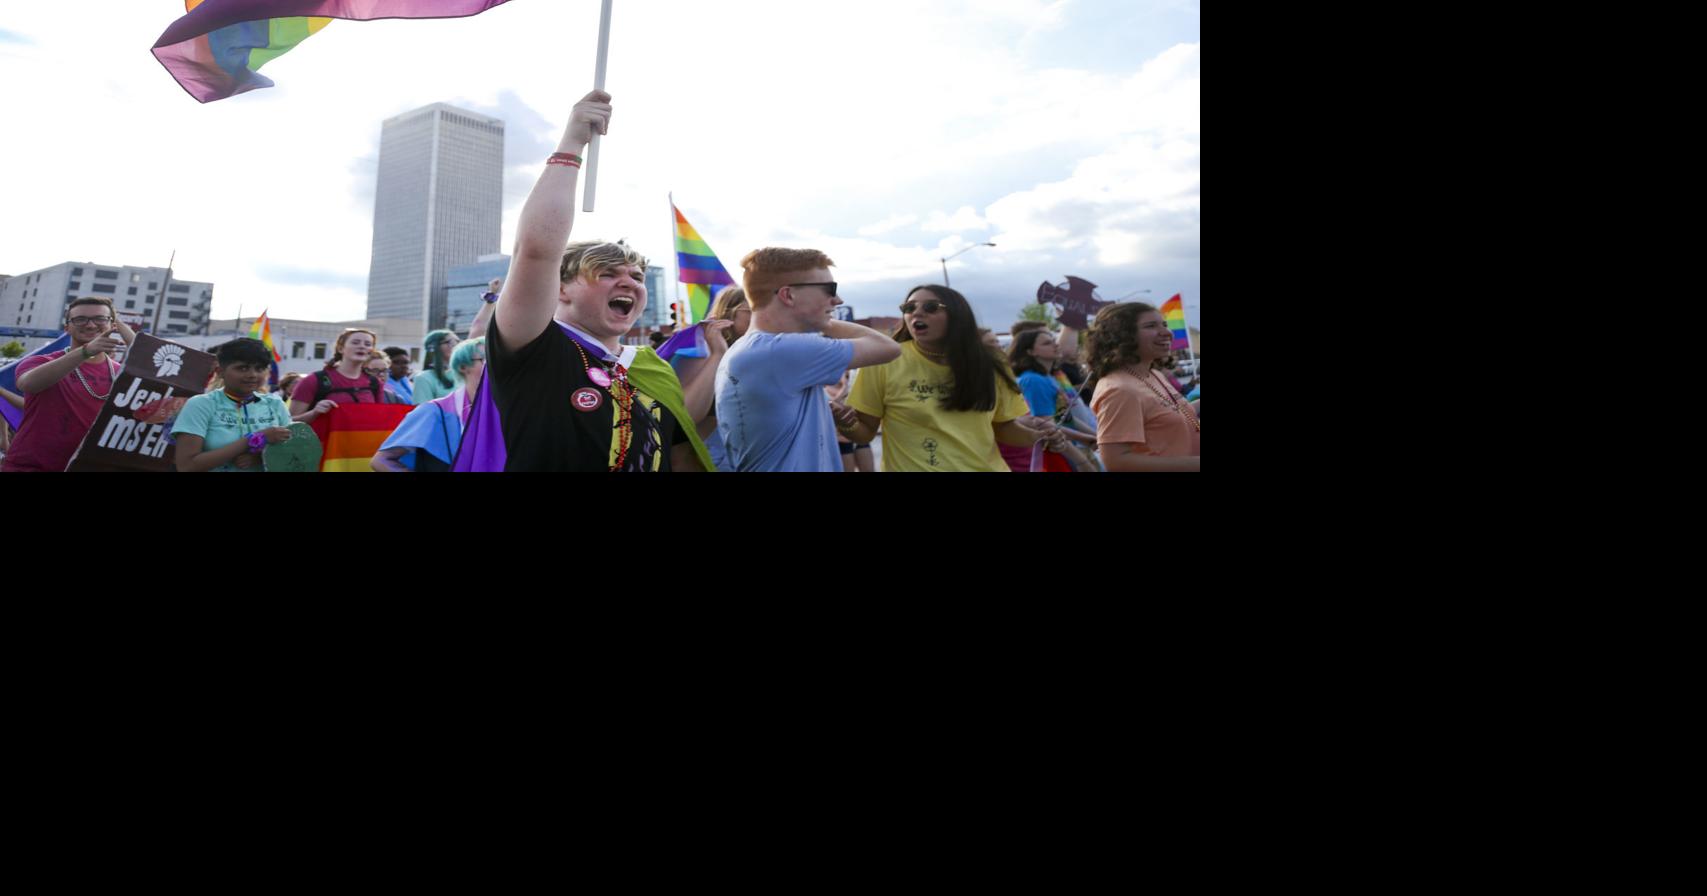 36th annual Tulsa Pride events announced